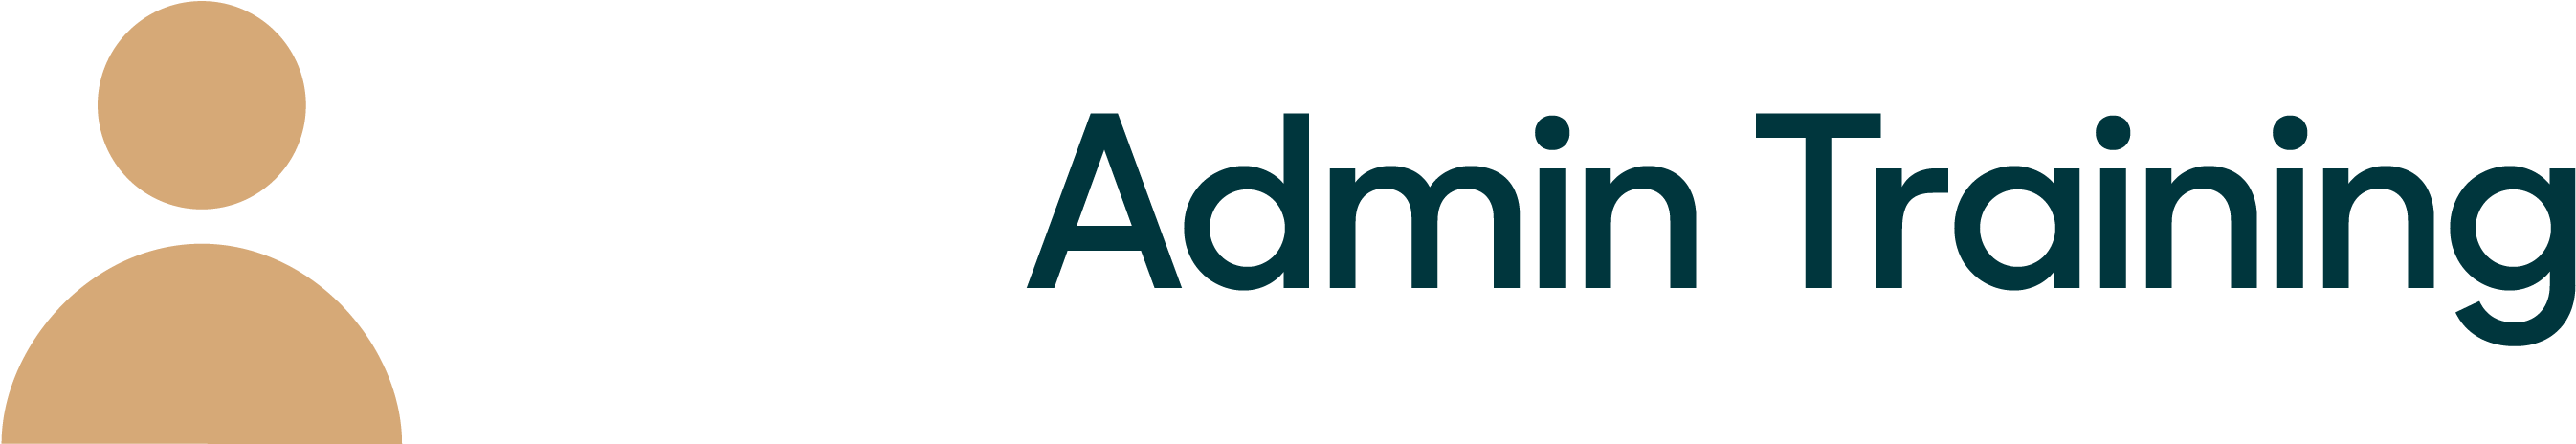 Admin Training Logo PNG image